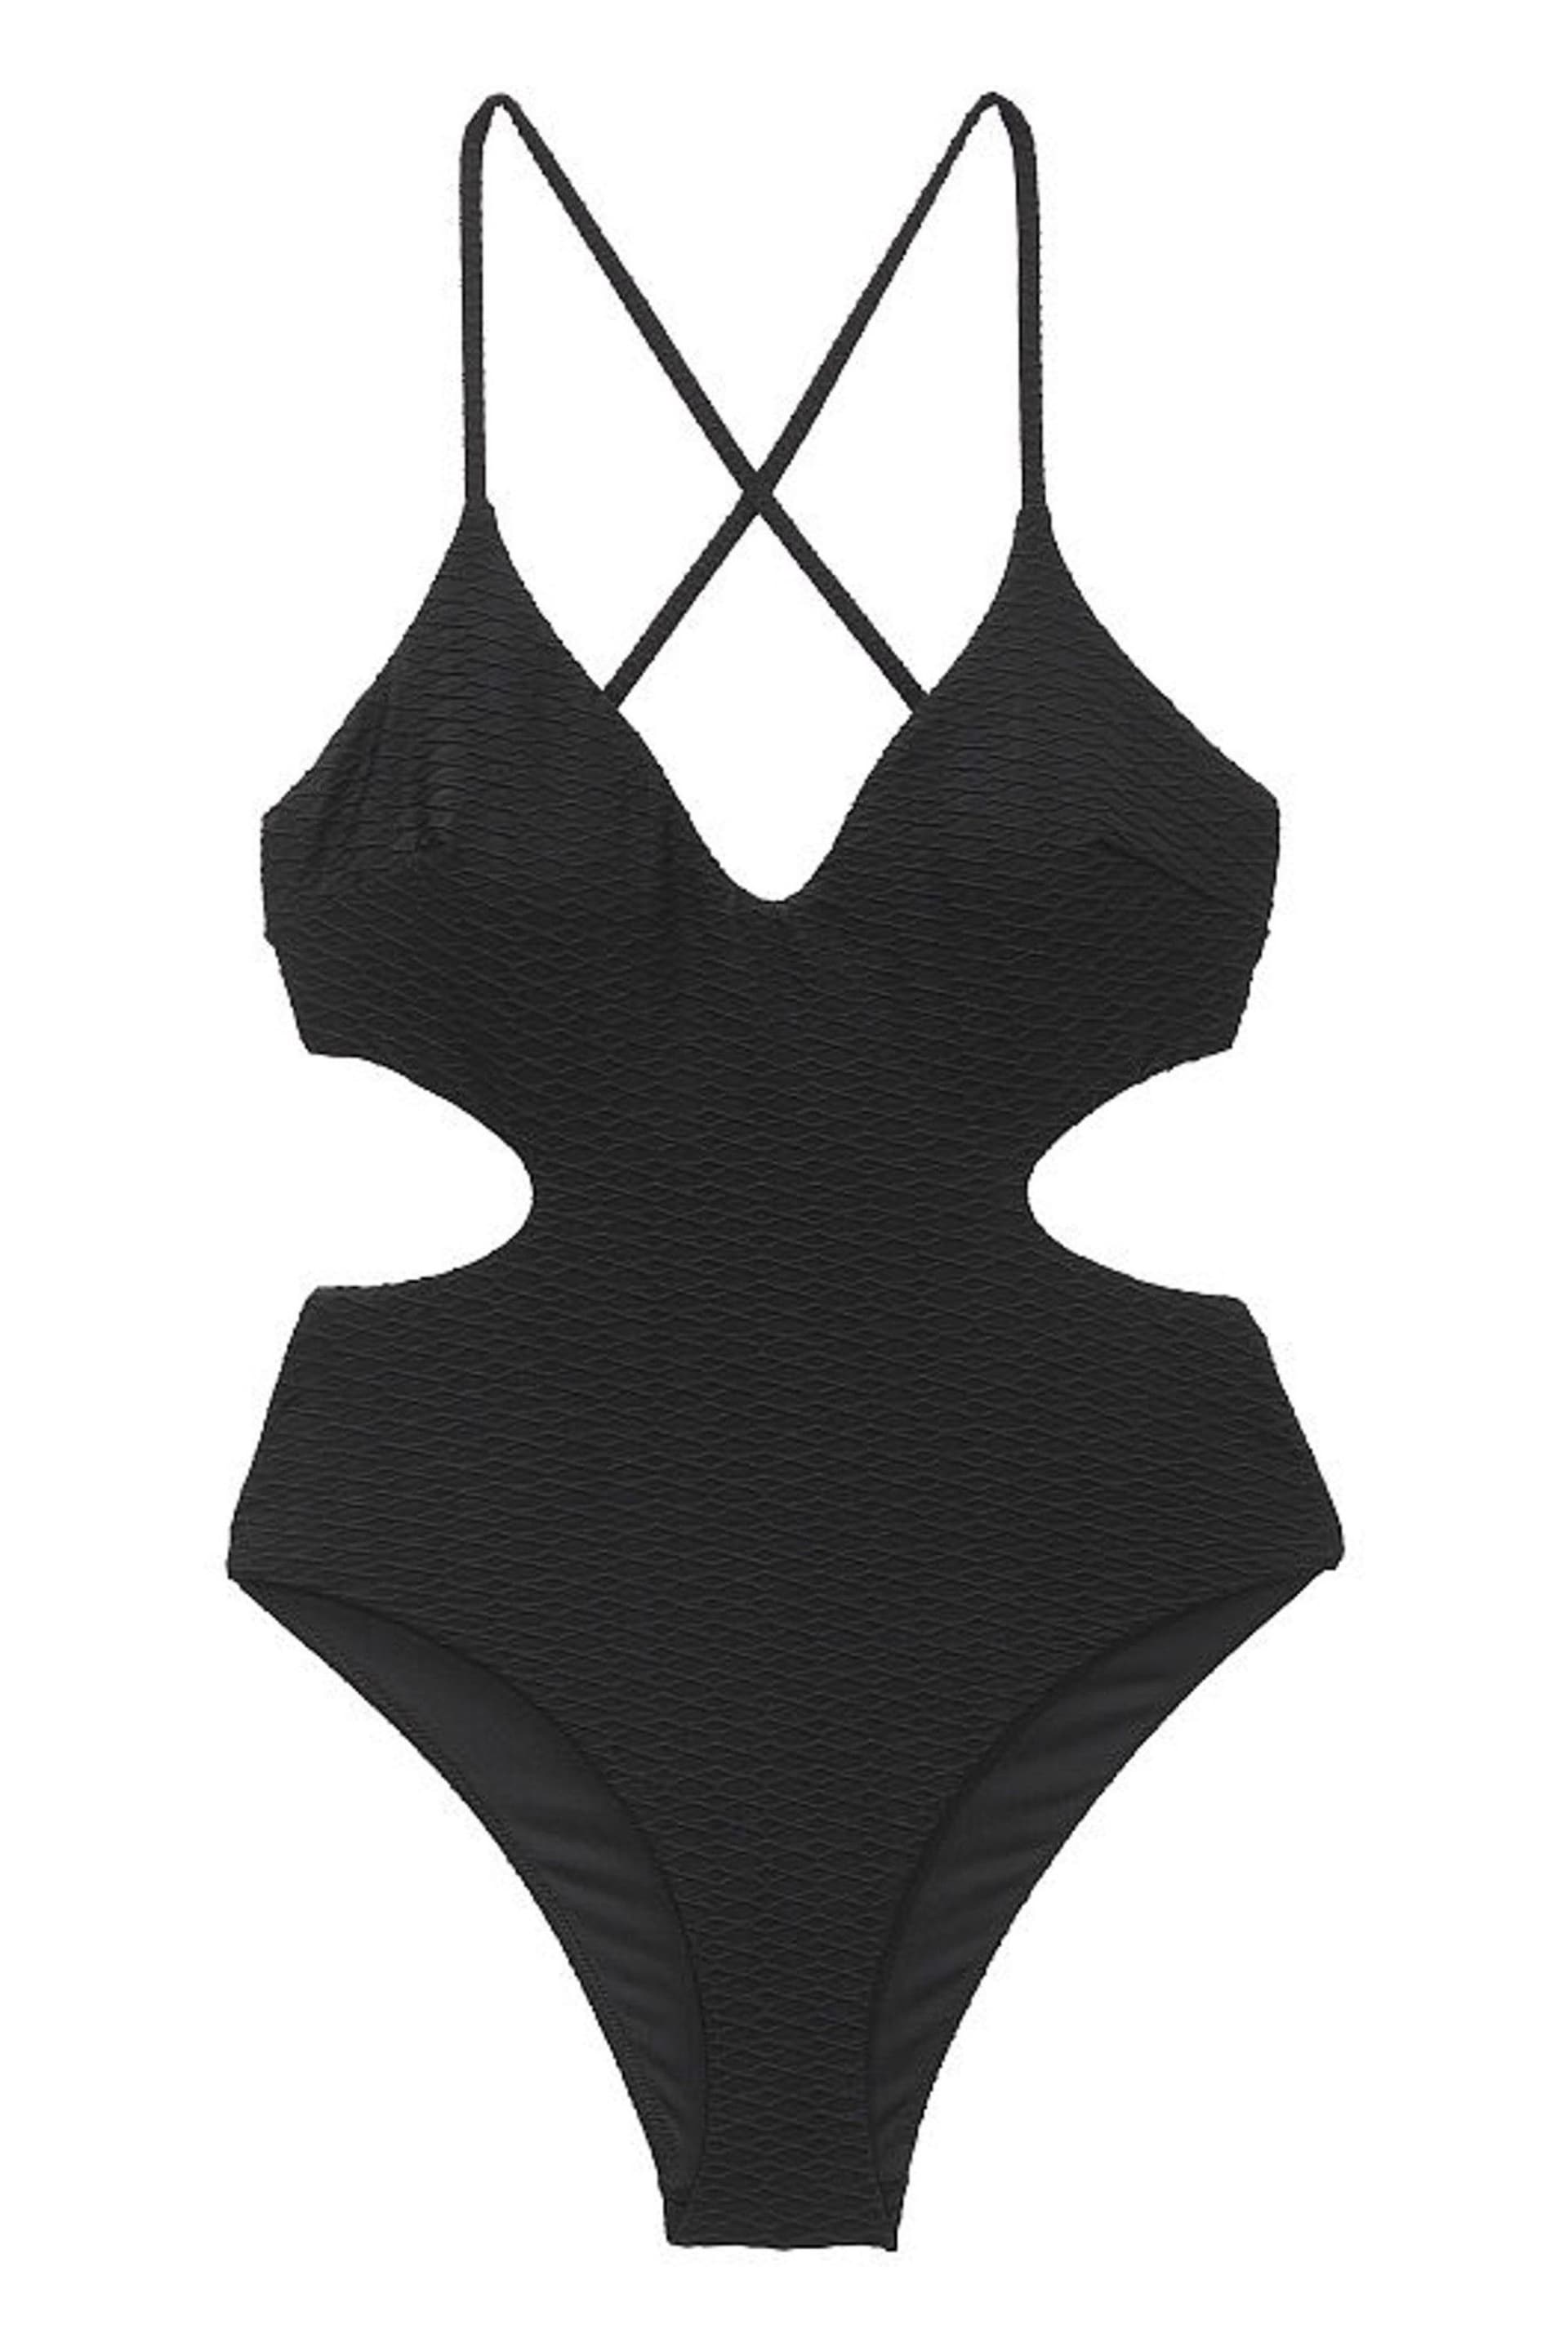 Victoria's Secret Black Fishnet Cutout Swimsuit - Image 3 of 3